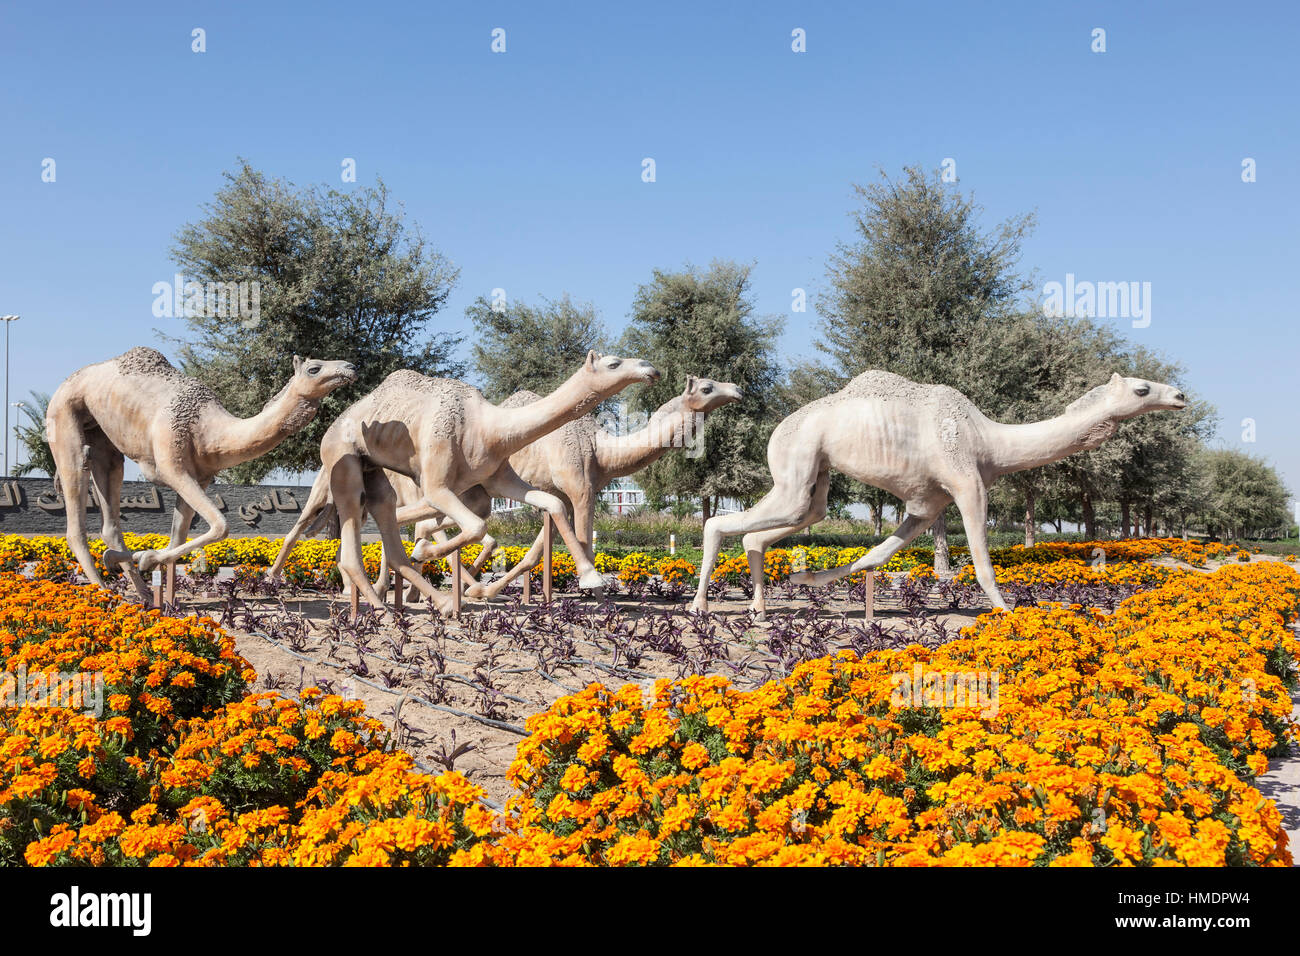 Course de chameaux statue au Dubai Camel Race Course. Emirats Arabes Unis, Moyen Orient Banque D'Images